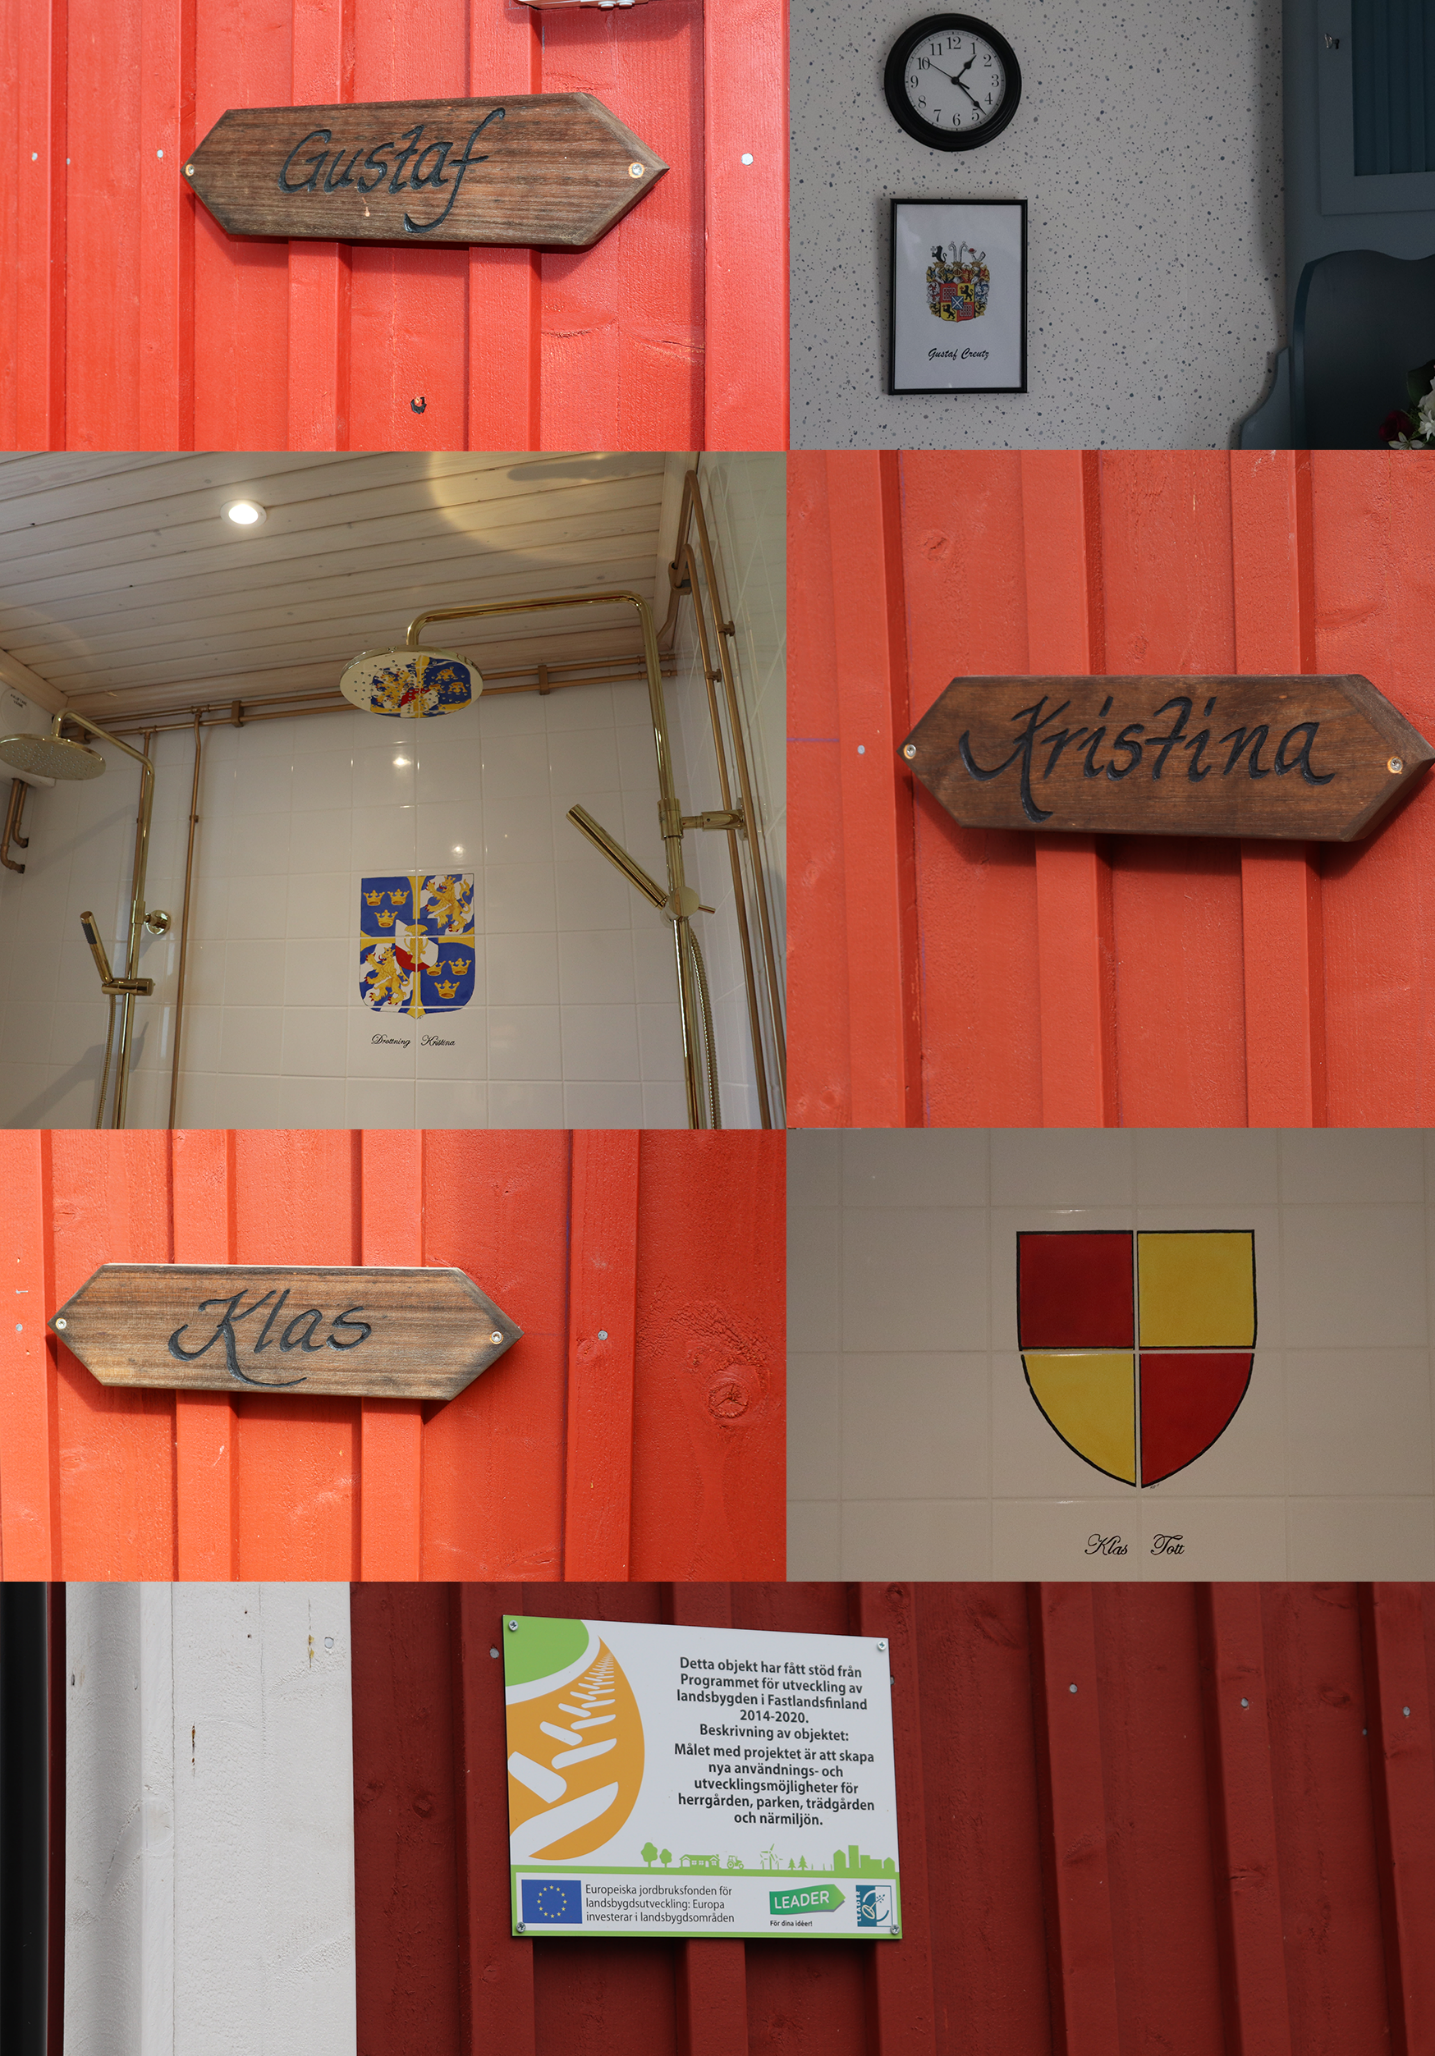 Usean kuvan kollaasi saunatiloista. Kuvassa kyltit, joissa lukee Gustaf, Kristina ja Klas. Kuva kylpyhuoneesta, jossa on kultaiset suihkut ja vaakuna seinässä.